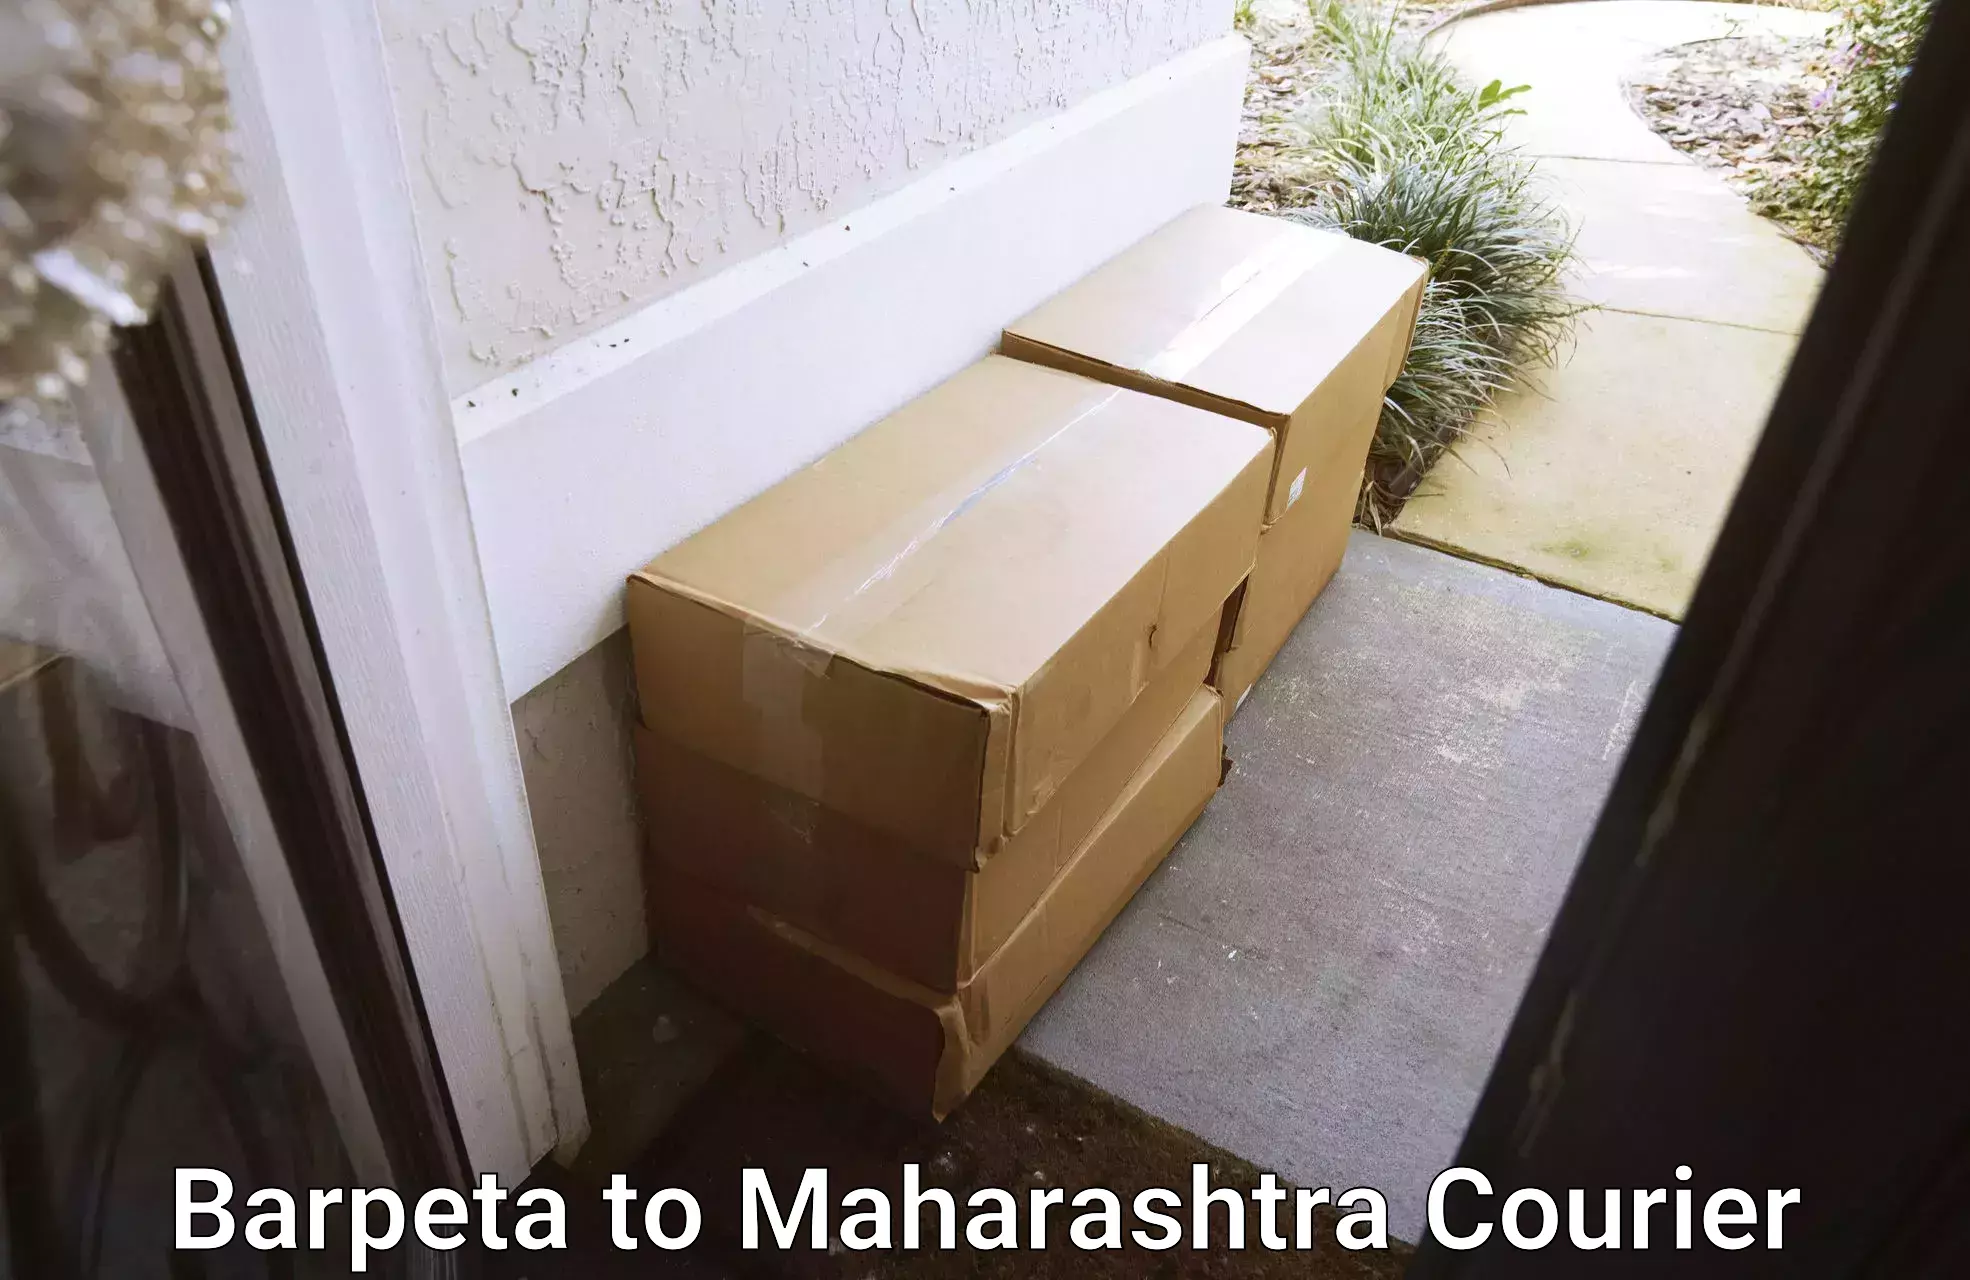 Urgent courier needs Barpeta to Palghar